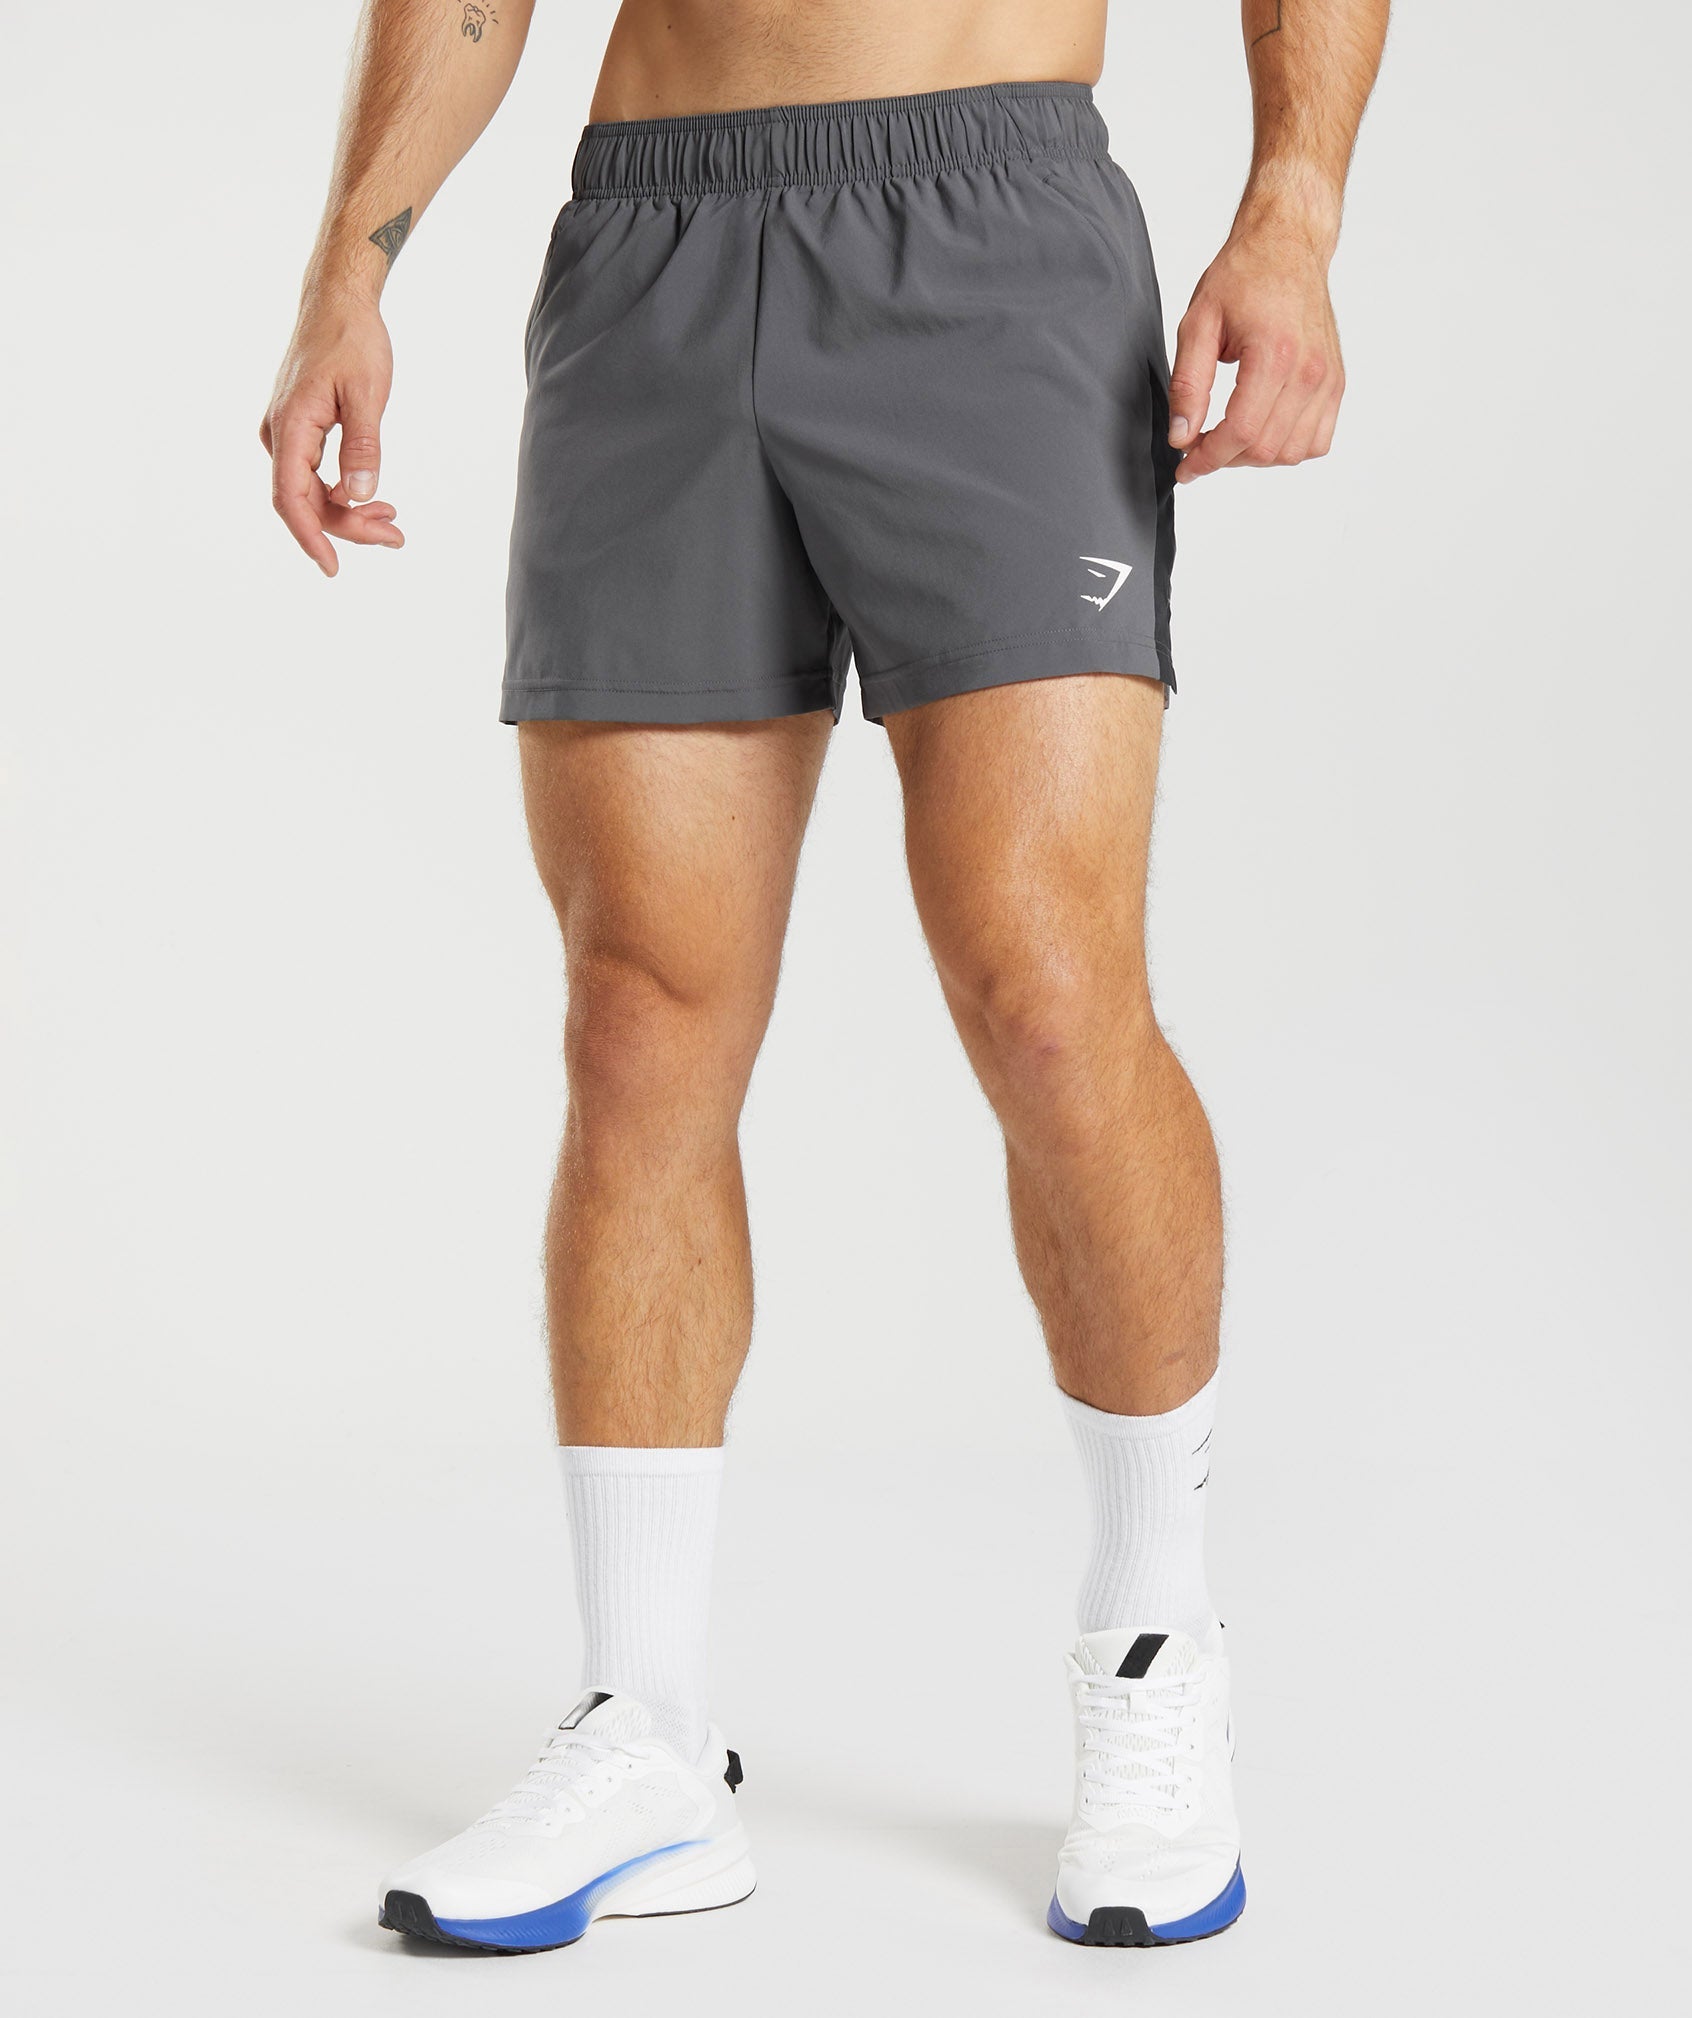 Gymshark Athletic Shorts for Men - Poshmark